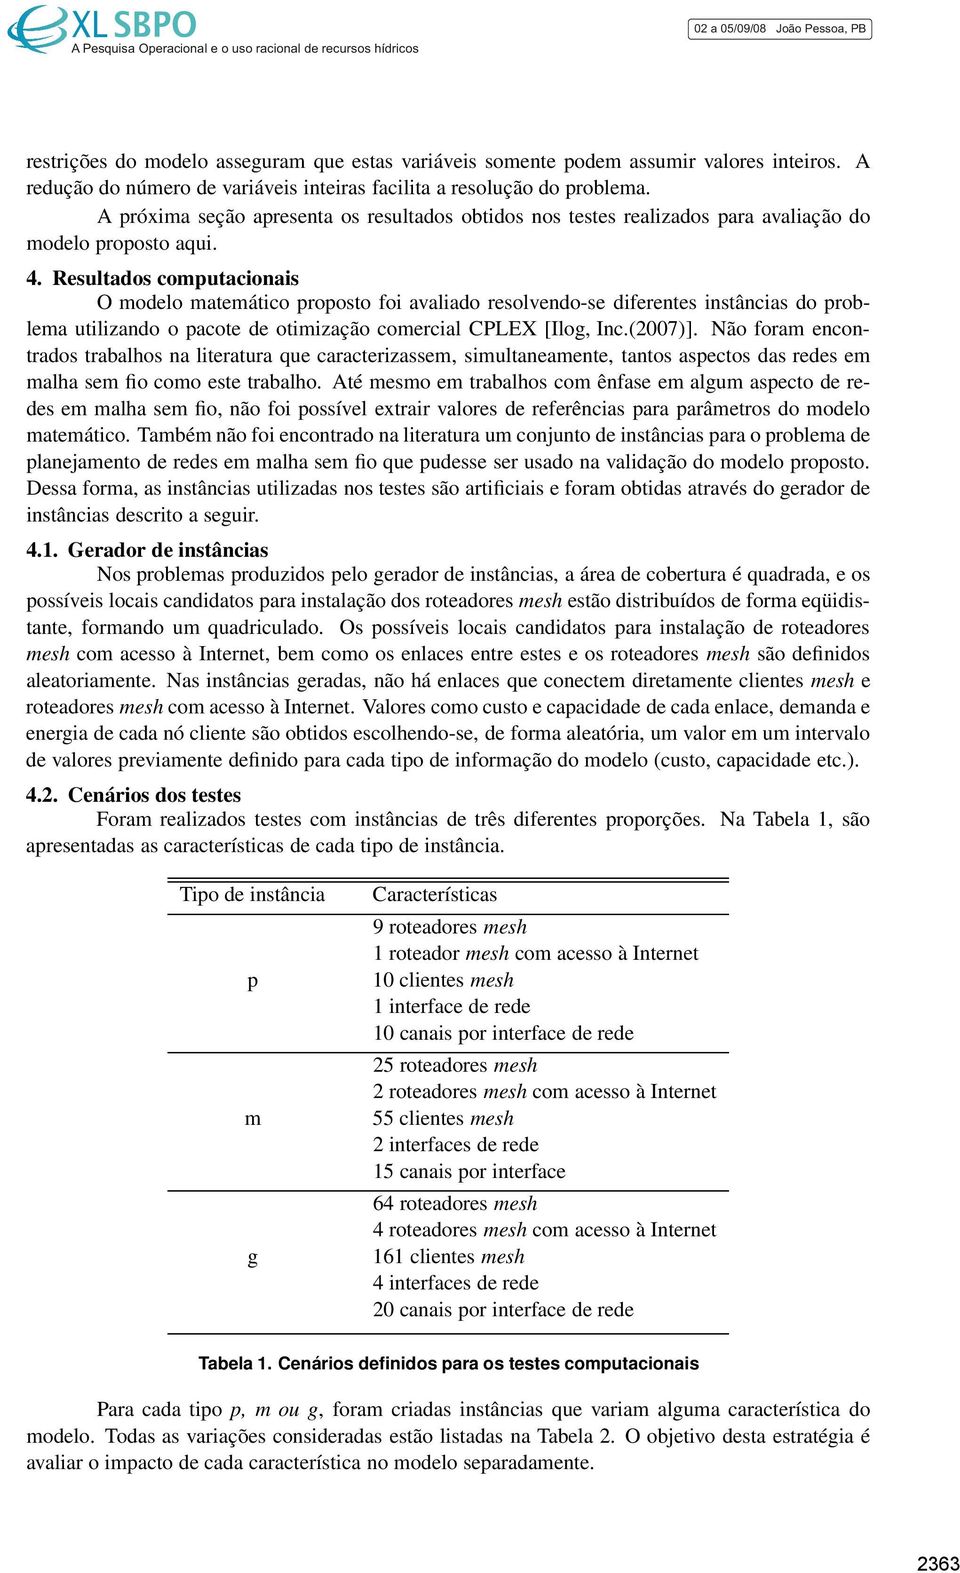 Resultados computacionais O modelo matemático proposto foi avaliado resolvendo-se diferentes instâncias do problema utilizando o pacote de otimização comercial CPLEX [Ilog, Inc.(2007)].